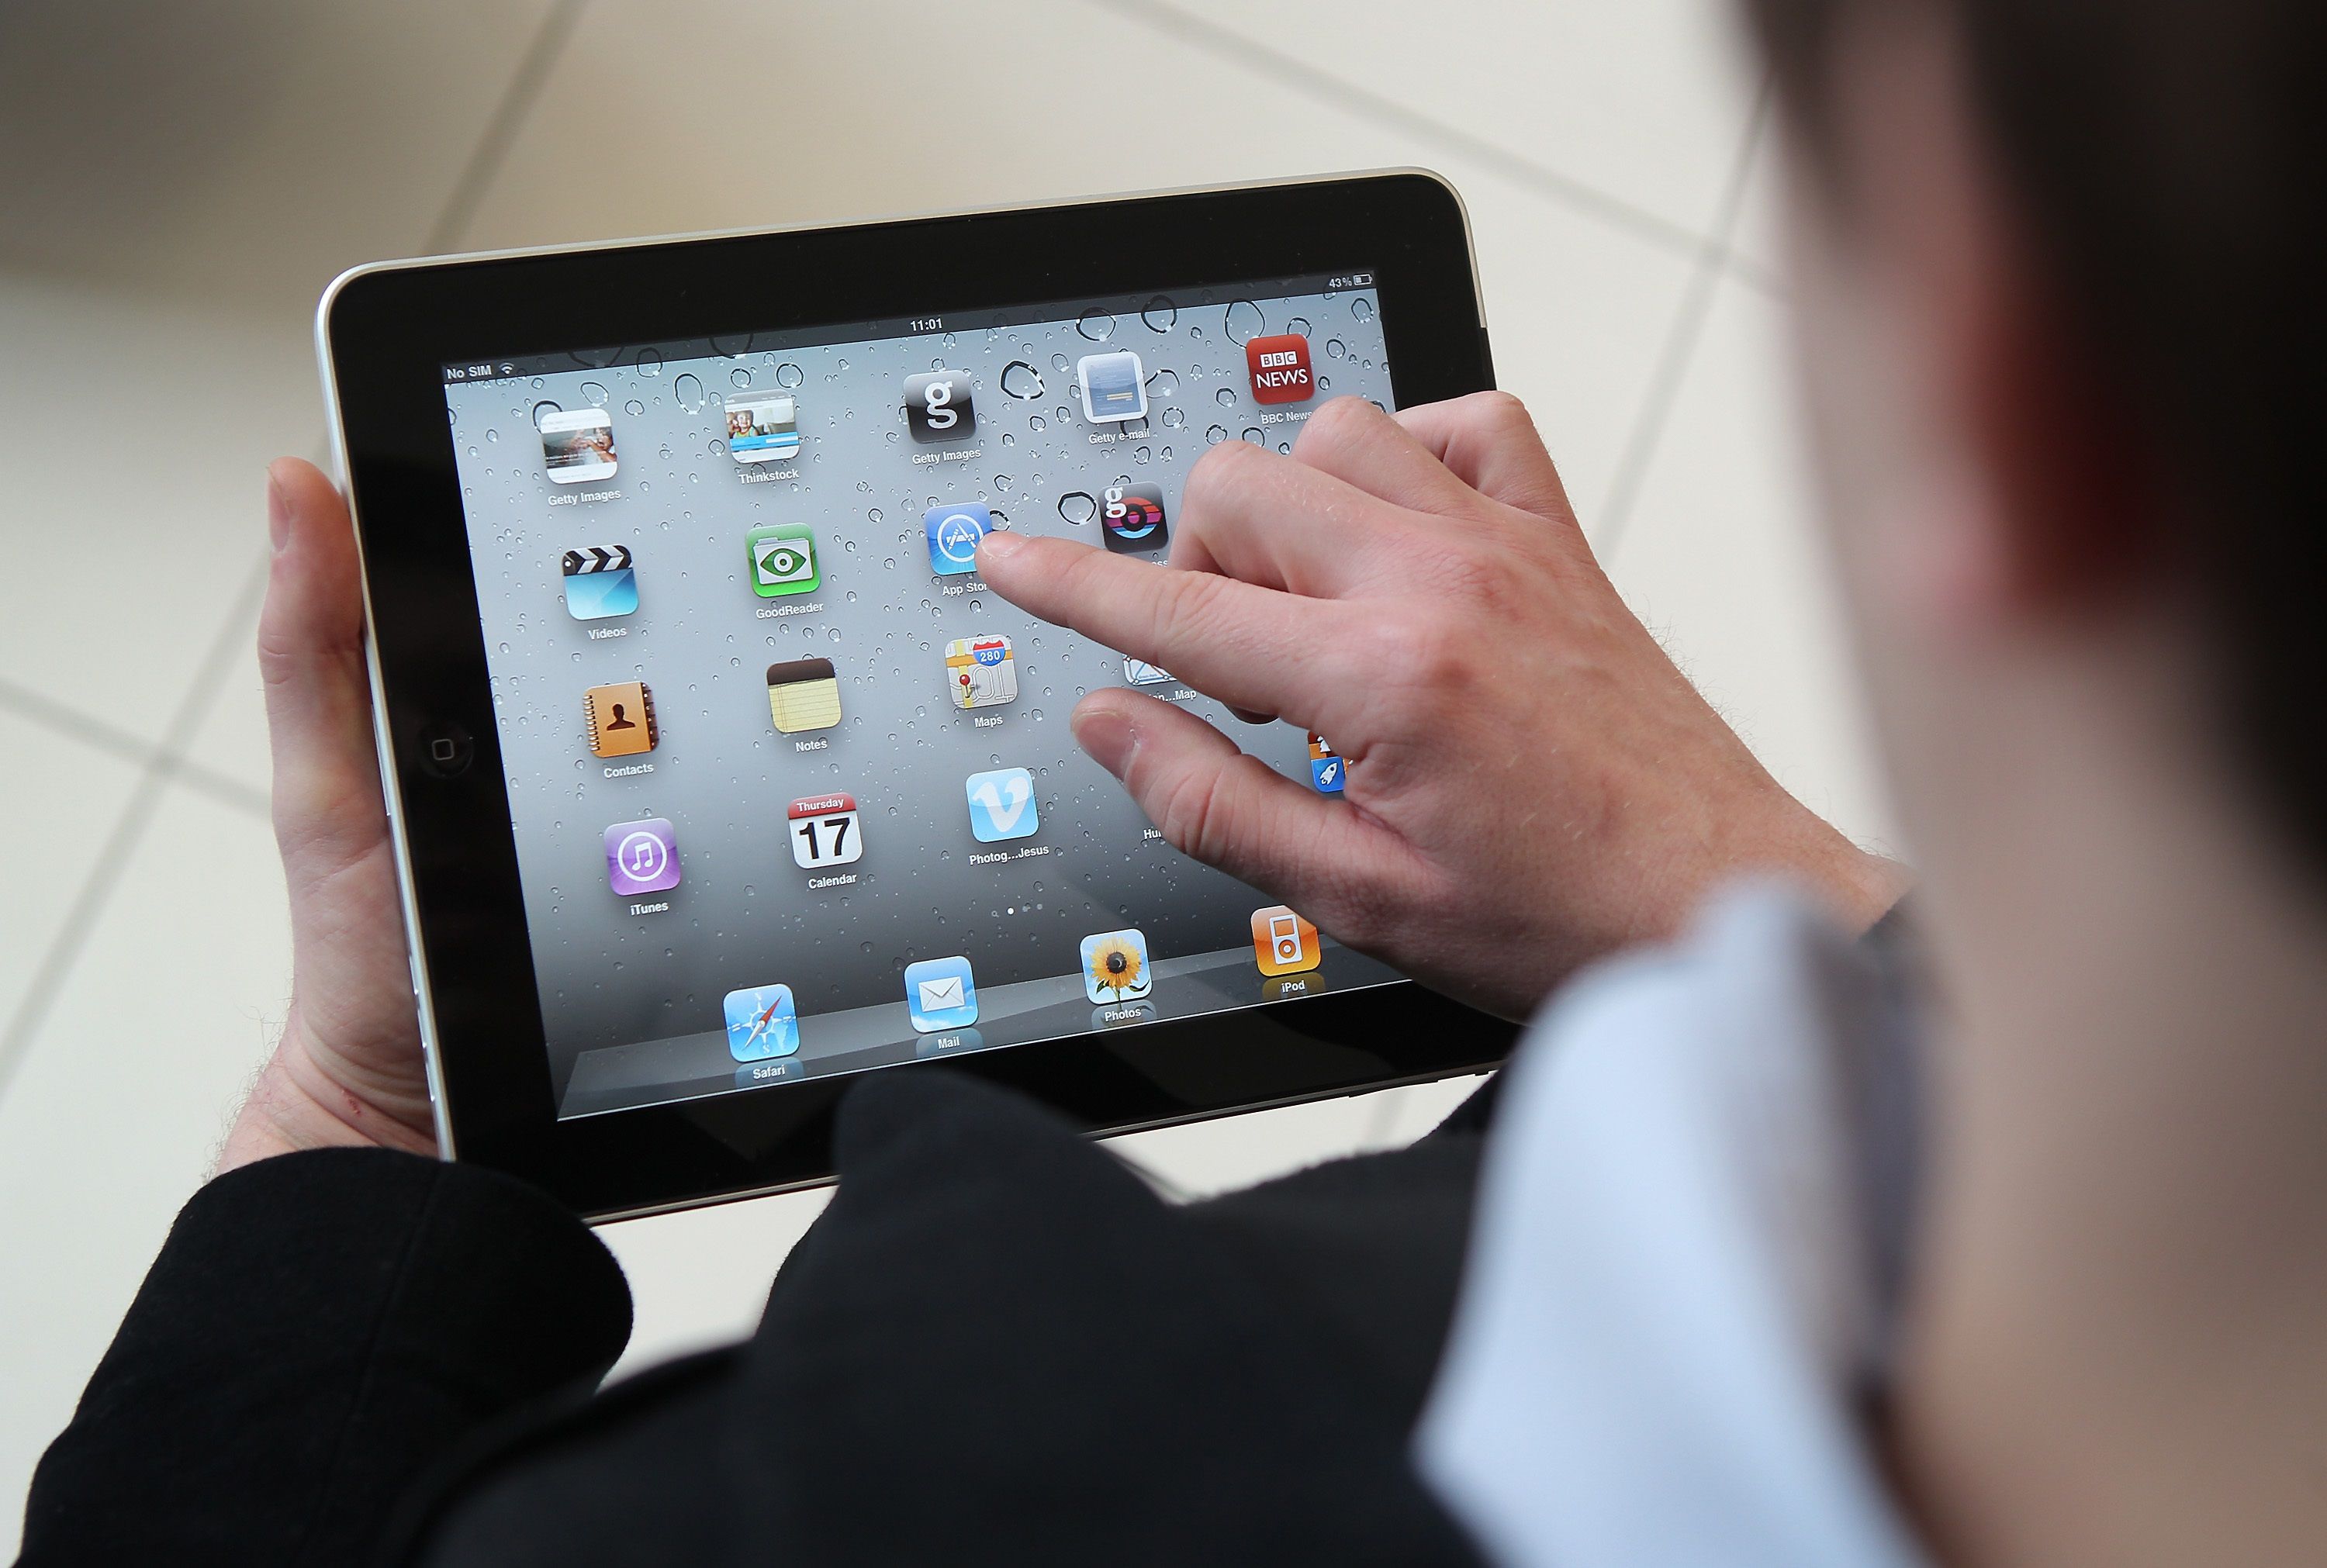 How to Buy an iPad on Craigslist